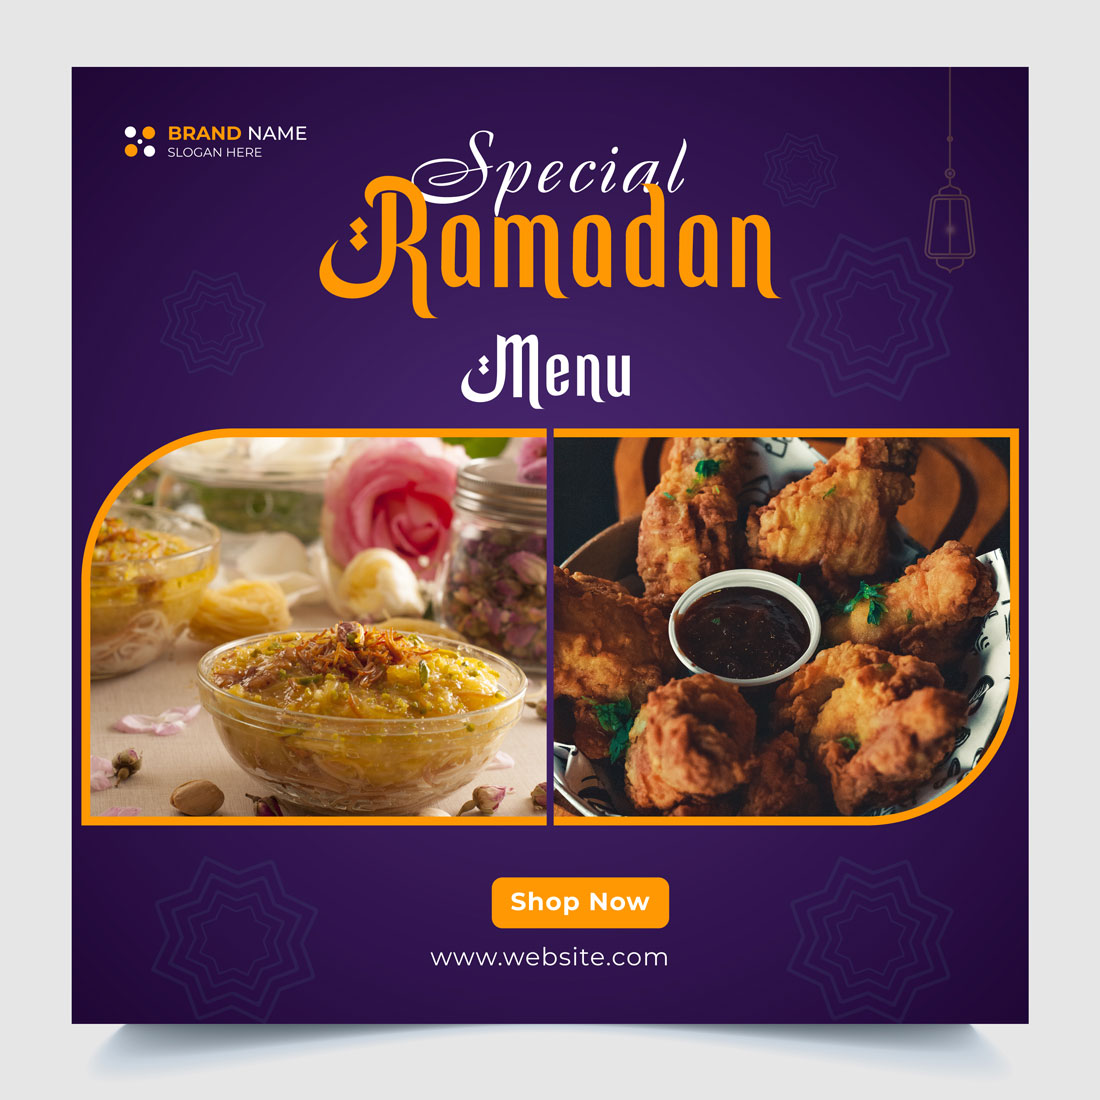 Flyer for a special ramadan menu.